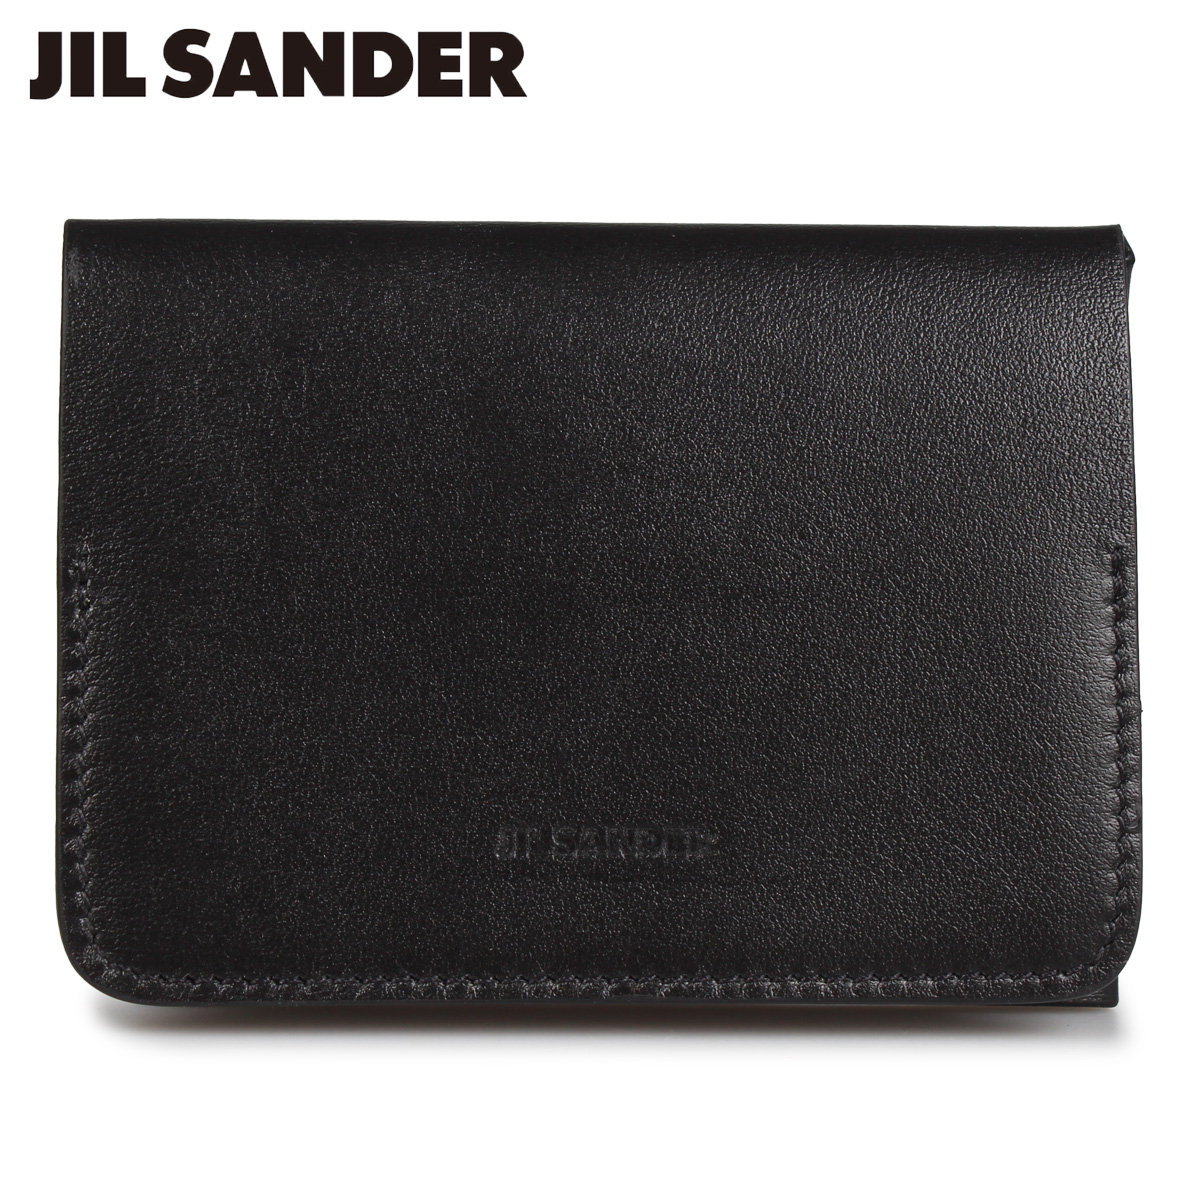 ジルサンダー JIL SANDER 財布 三つ折り財布 メンズ FOLDED CARD 